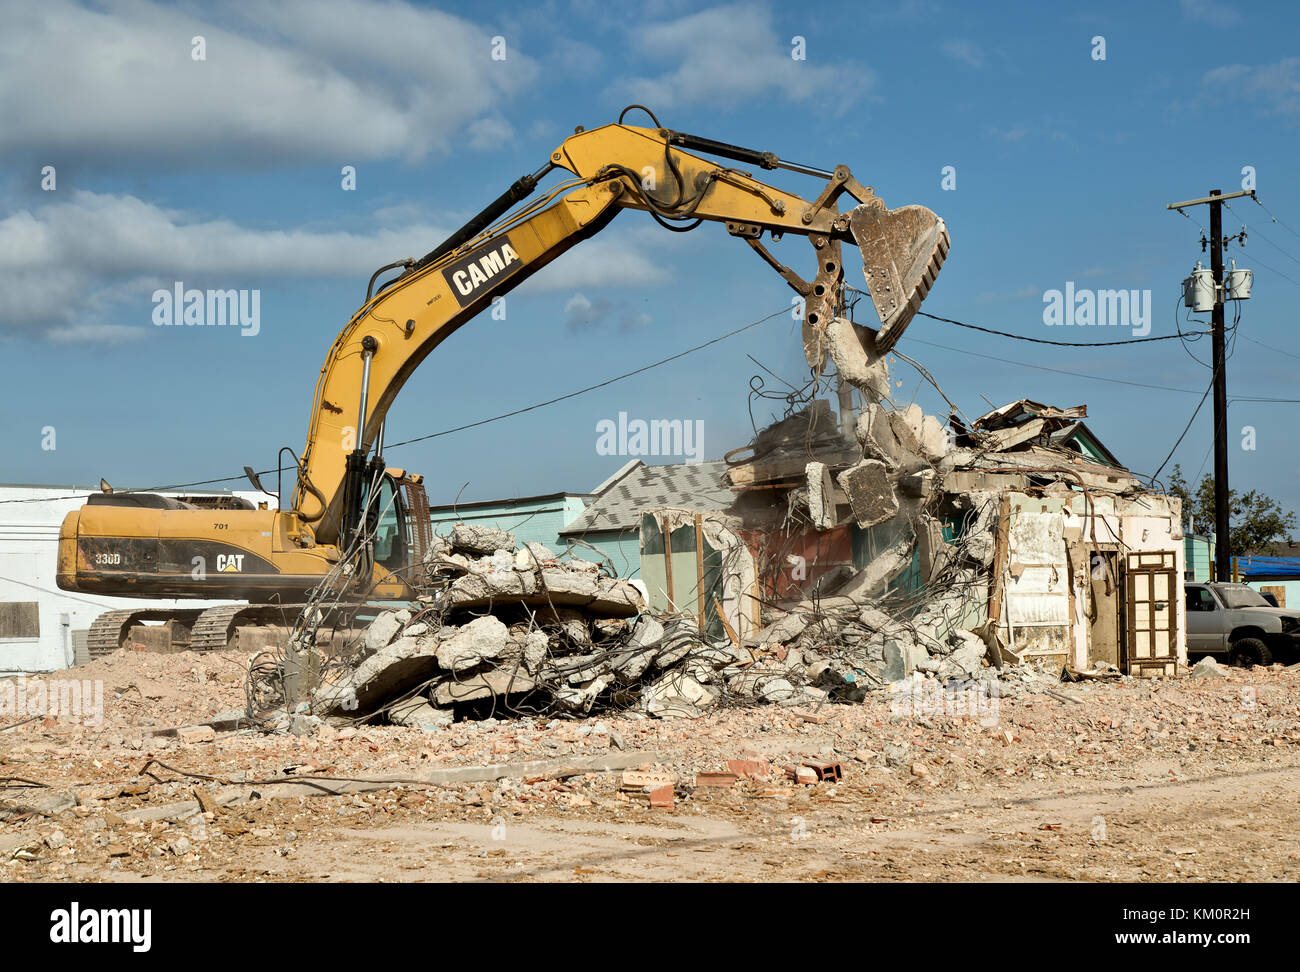 Excavadora hidráulica Caterpillar 330dl, pluma oscilante, limpieza de estructura antigua destruida como resultado del huracán Harvey 2017. Foto de stock